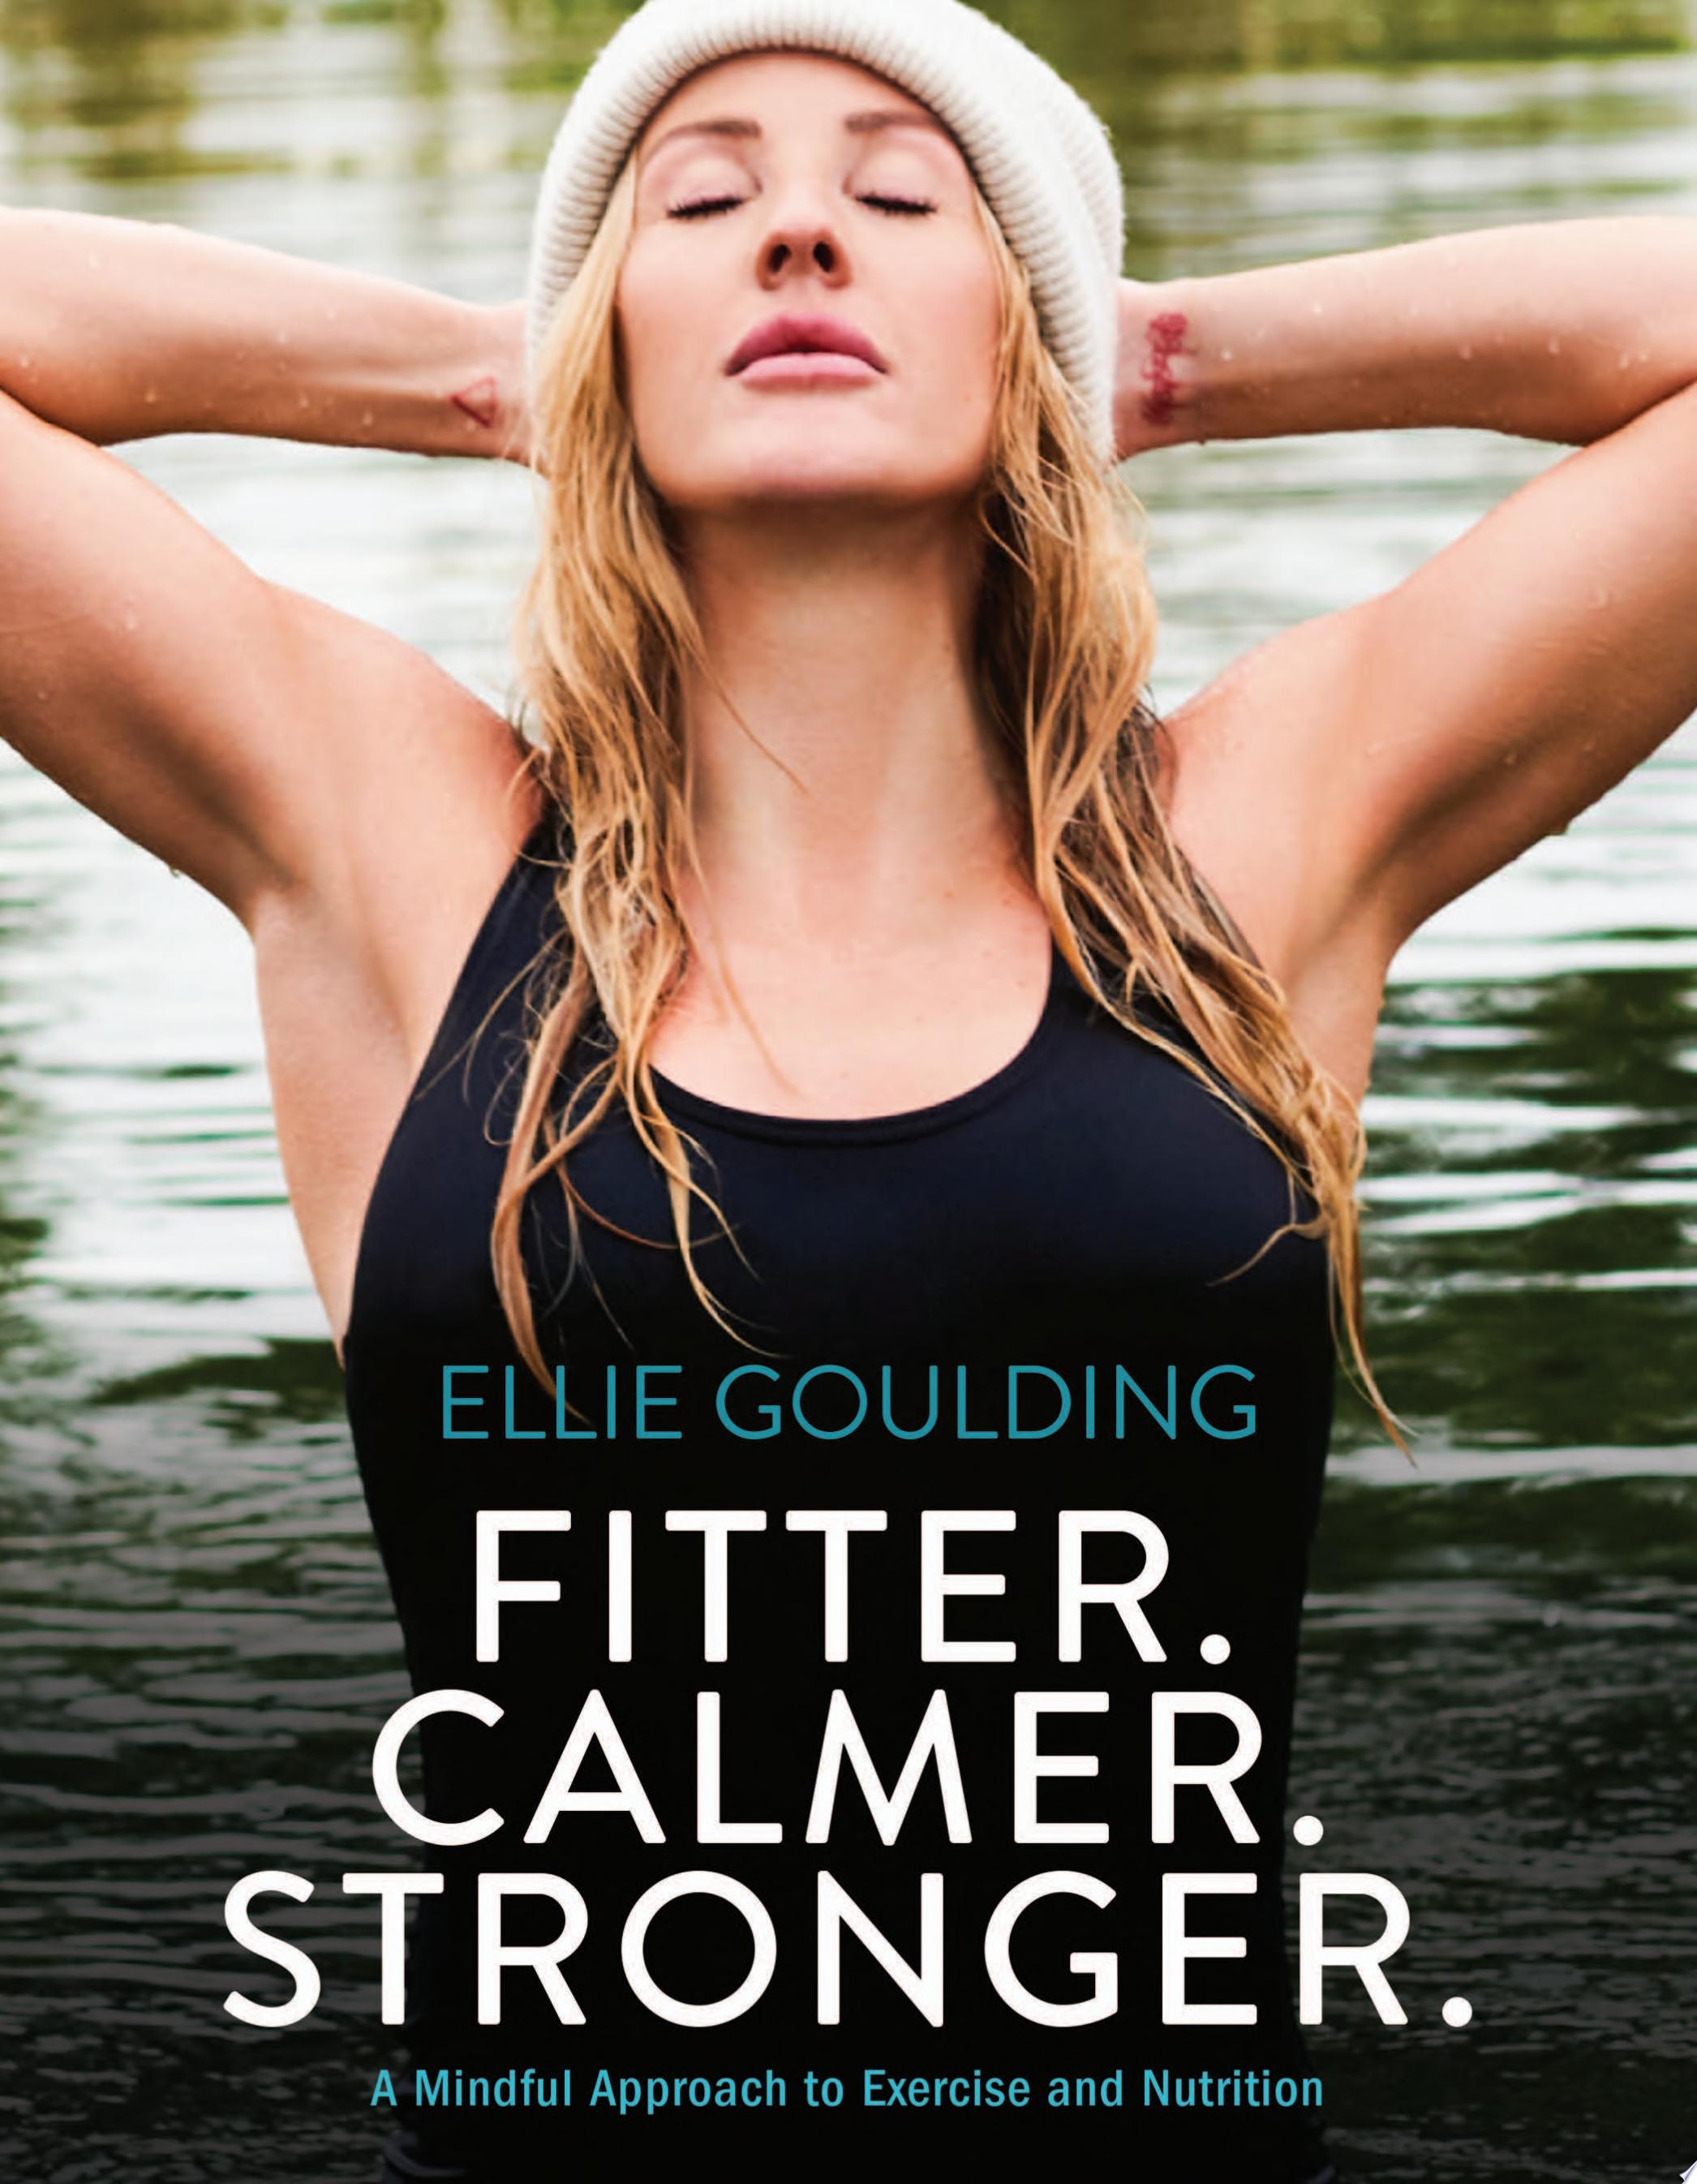 Image for "Fitter. Calmer. Stronger."